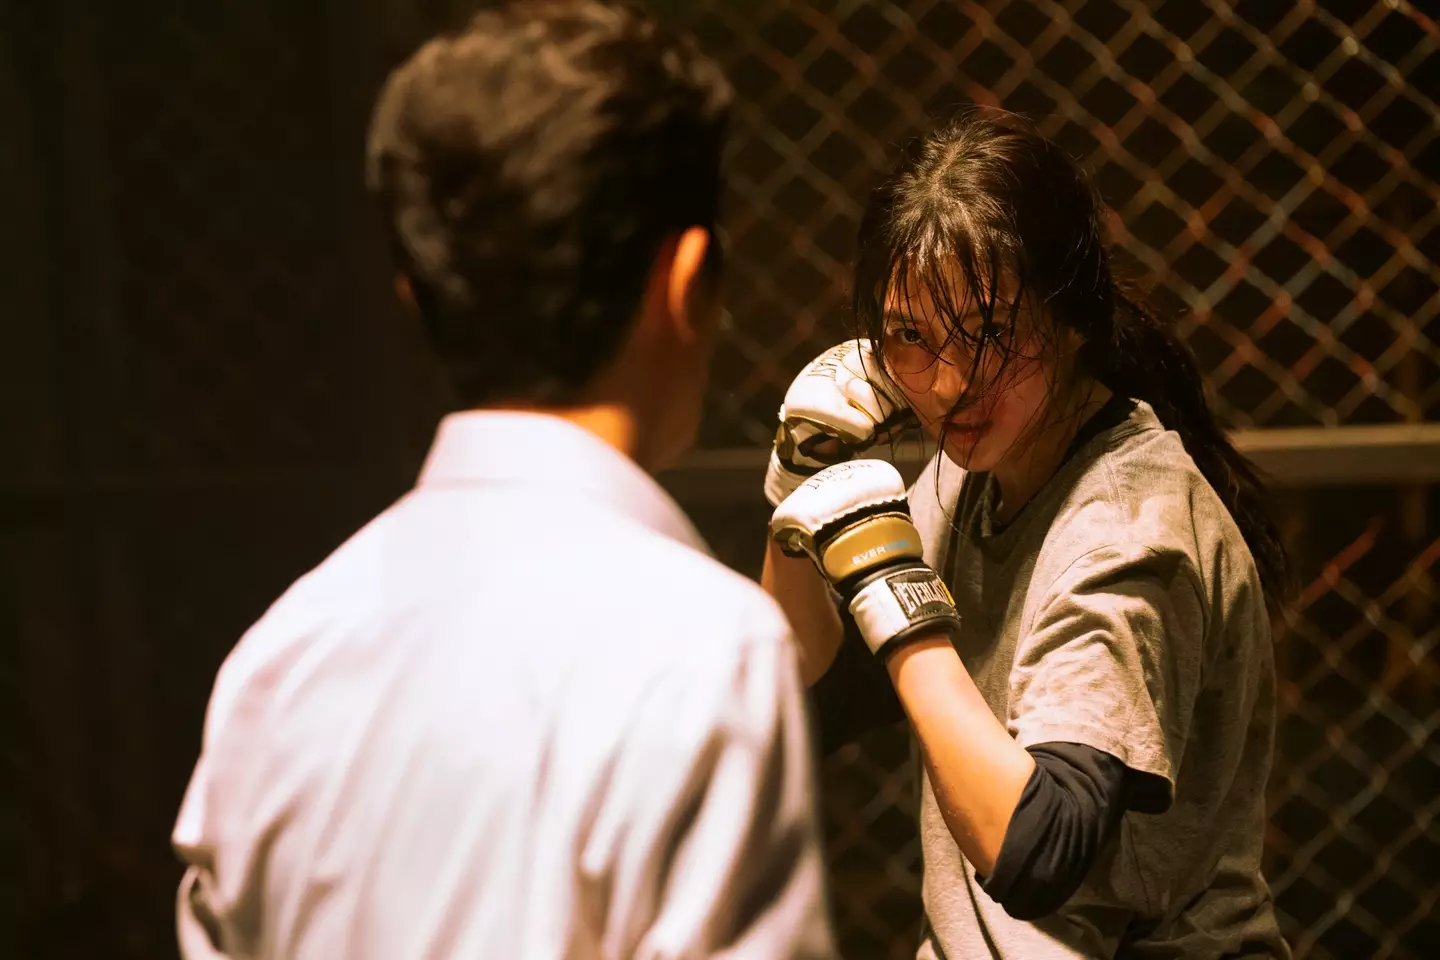 Jiwoo trains at the martial arts gym (